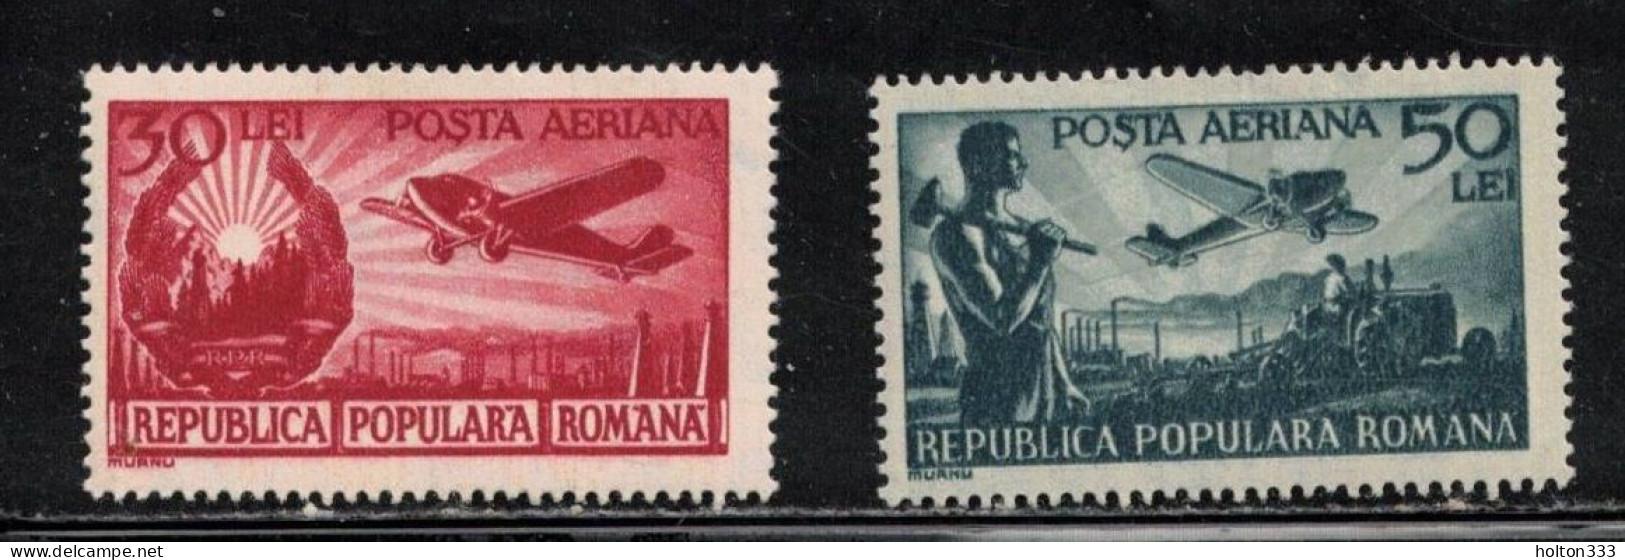 ROMANIA Scott # C32-3 MH - Airmail Issues - Nuovi